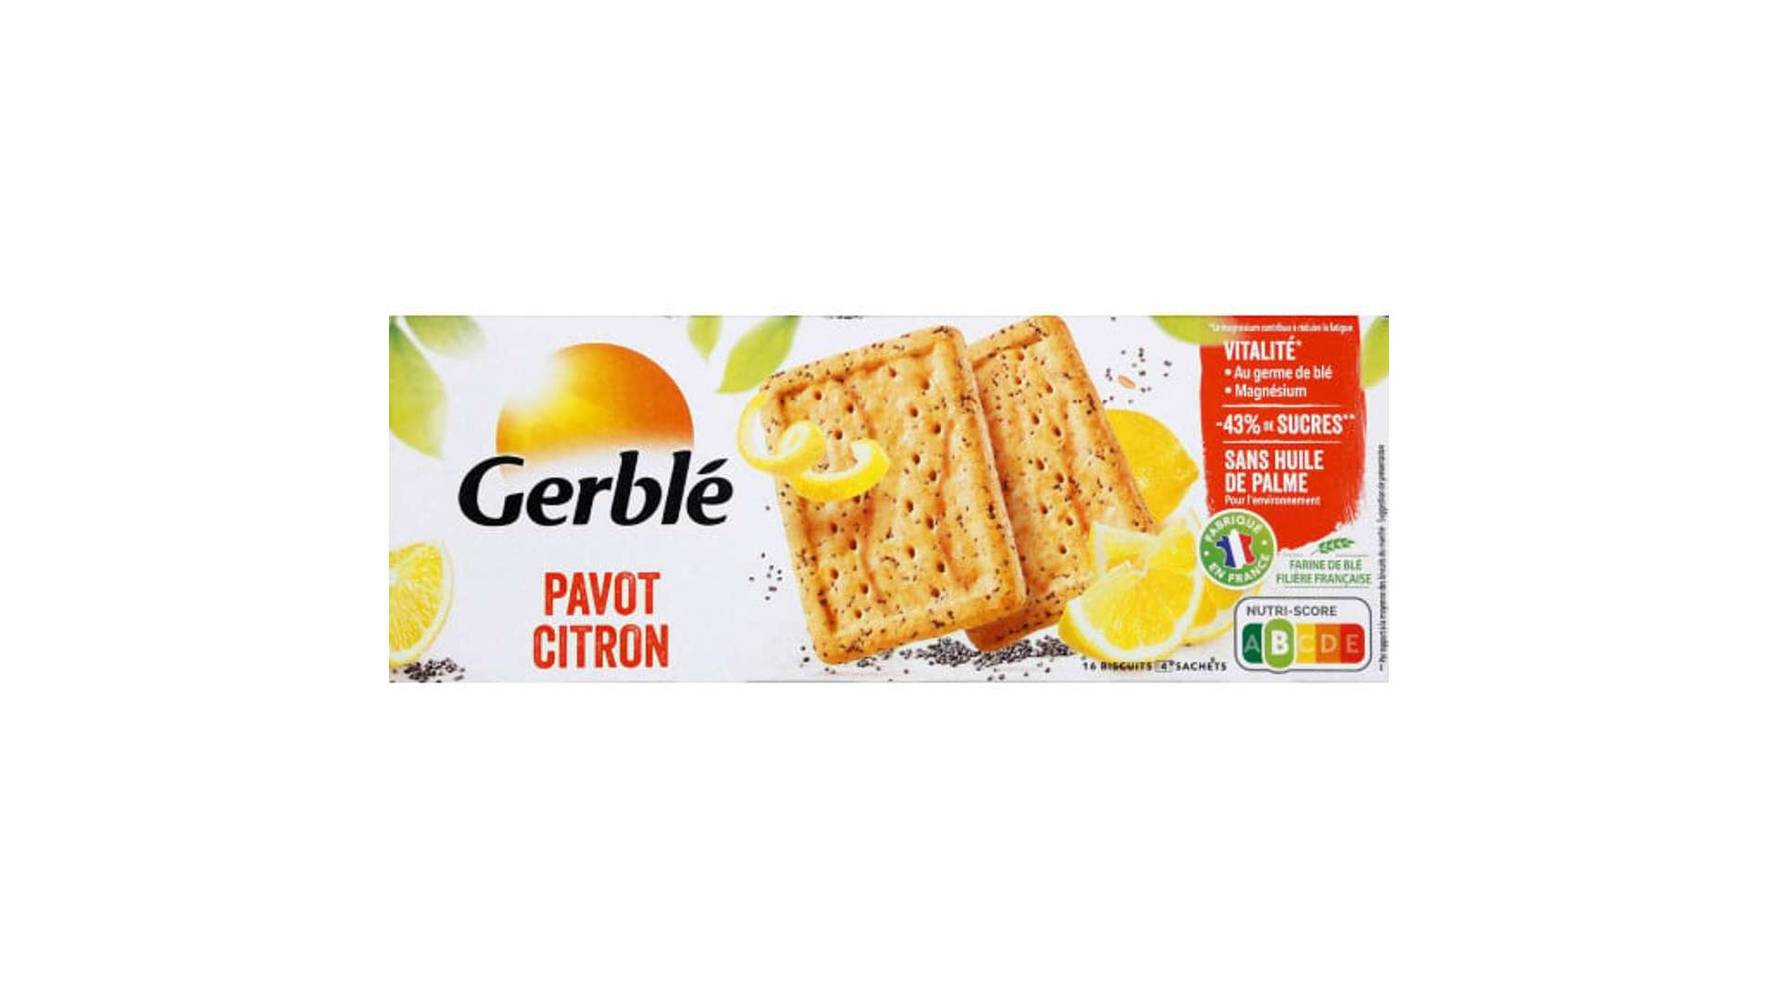 Gerblé - Vitalité biscuit pavot citron